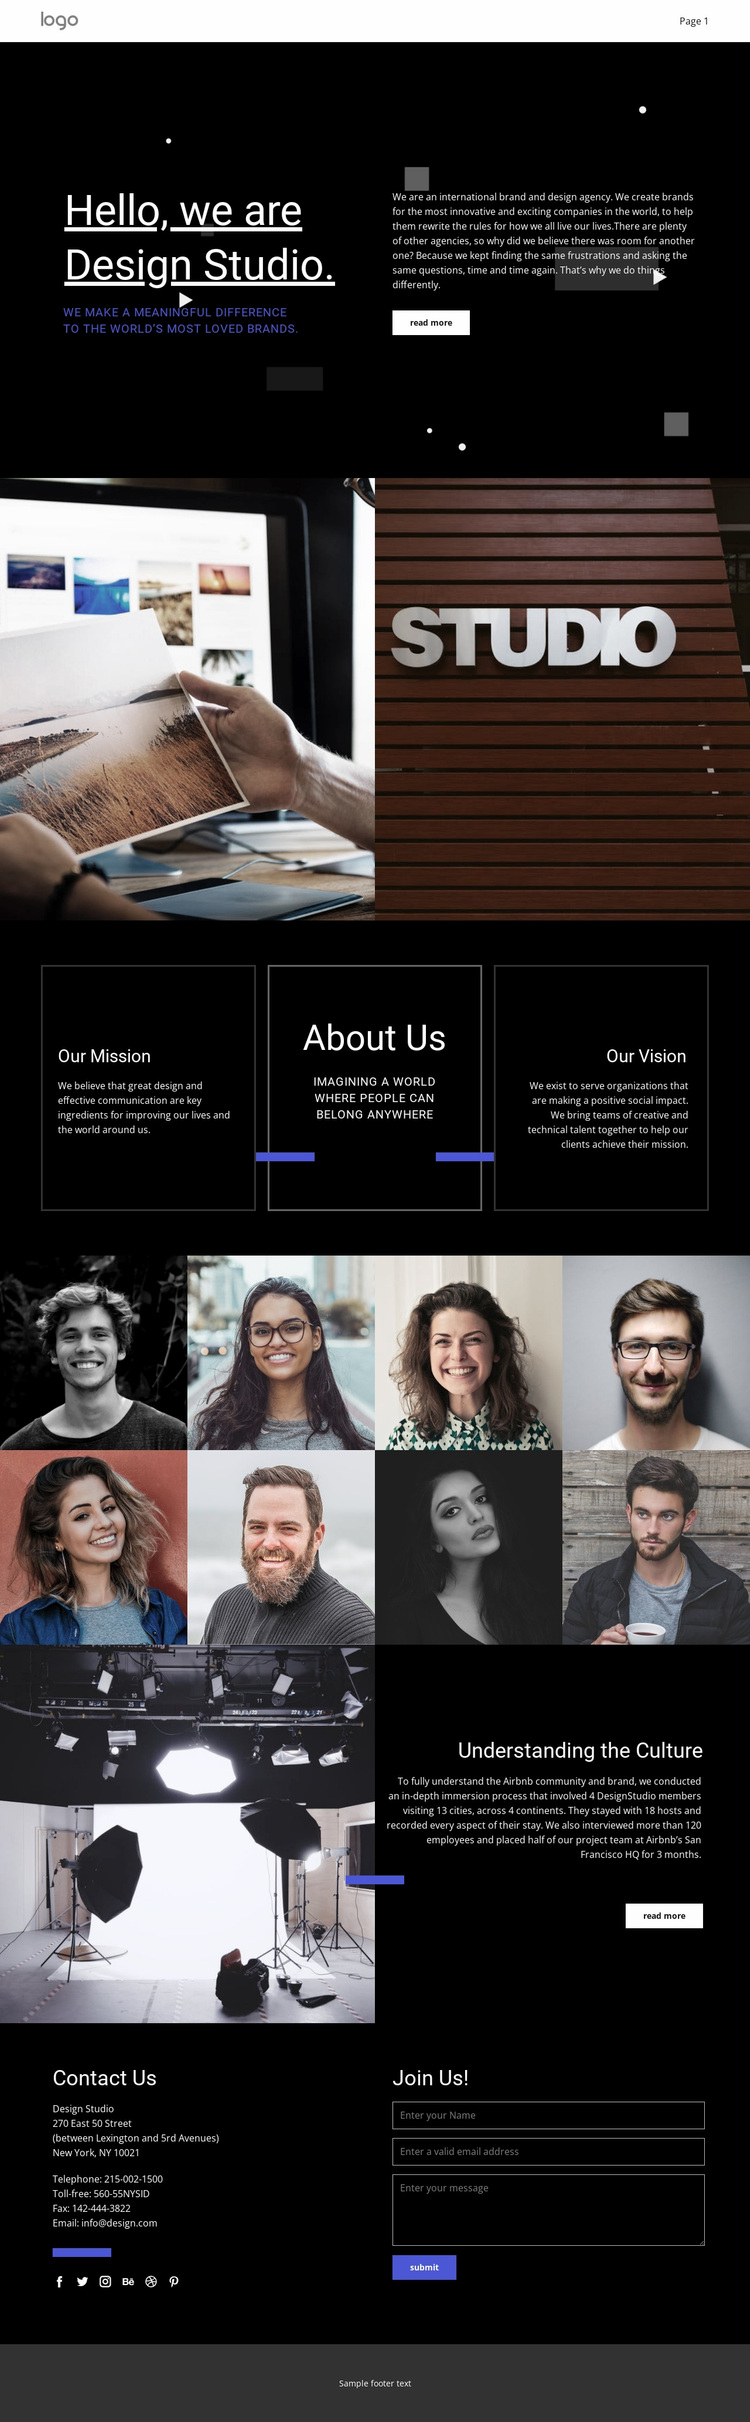 Our design is unique Website Design